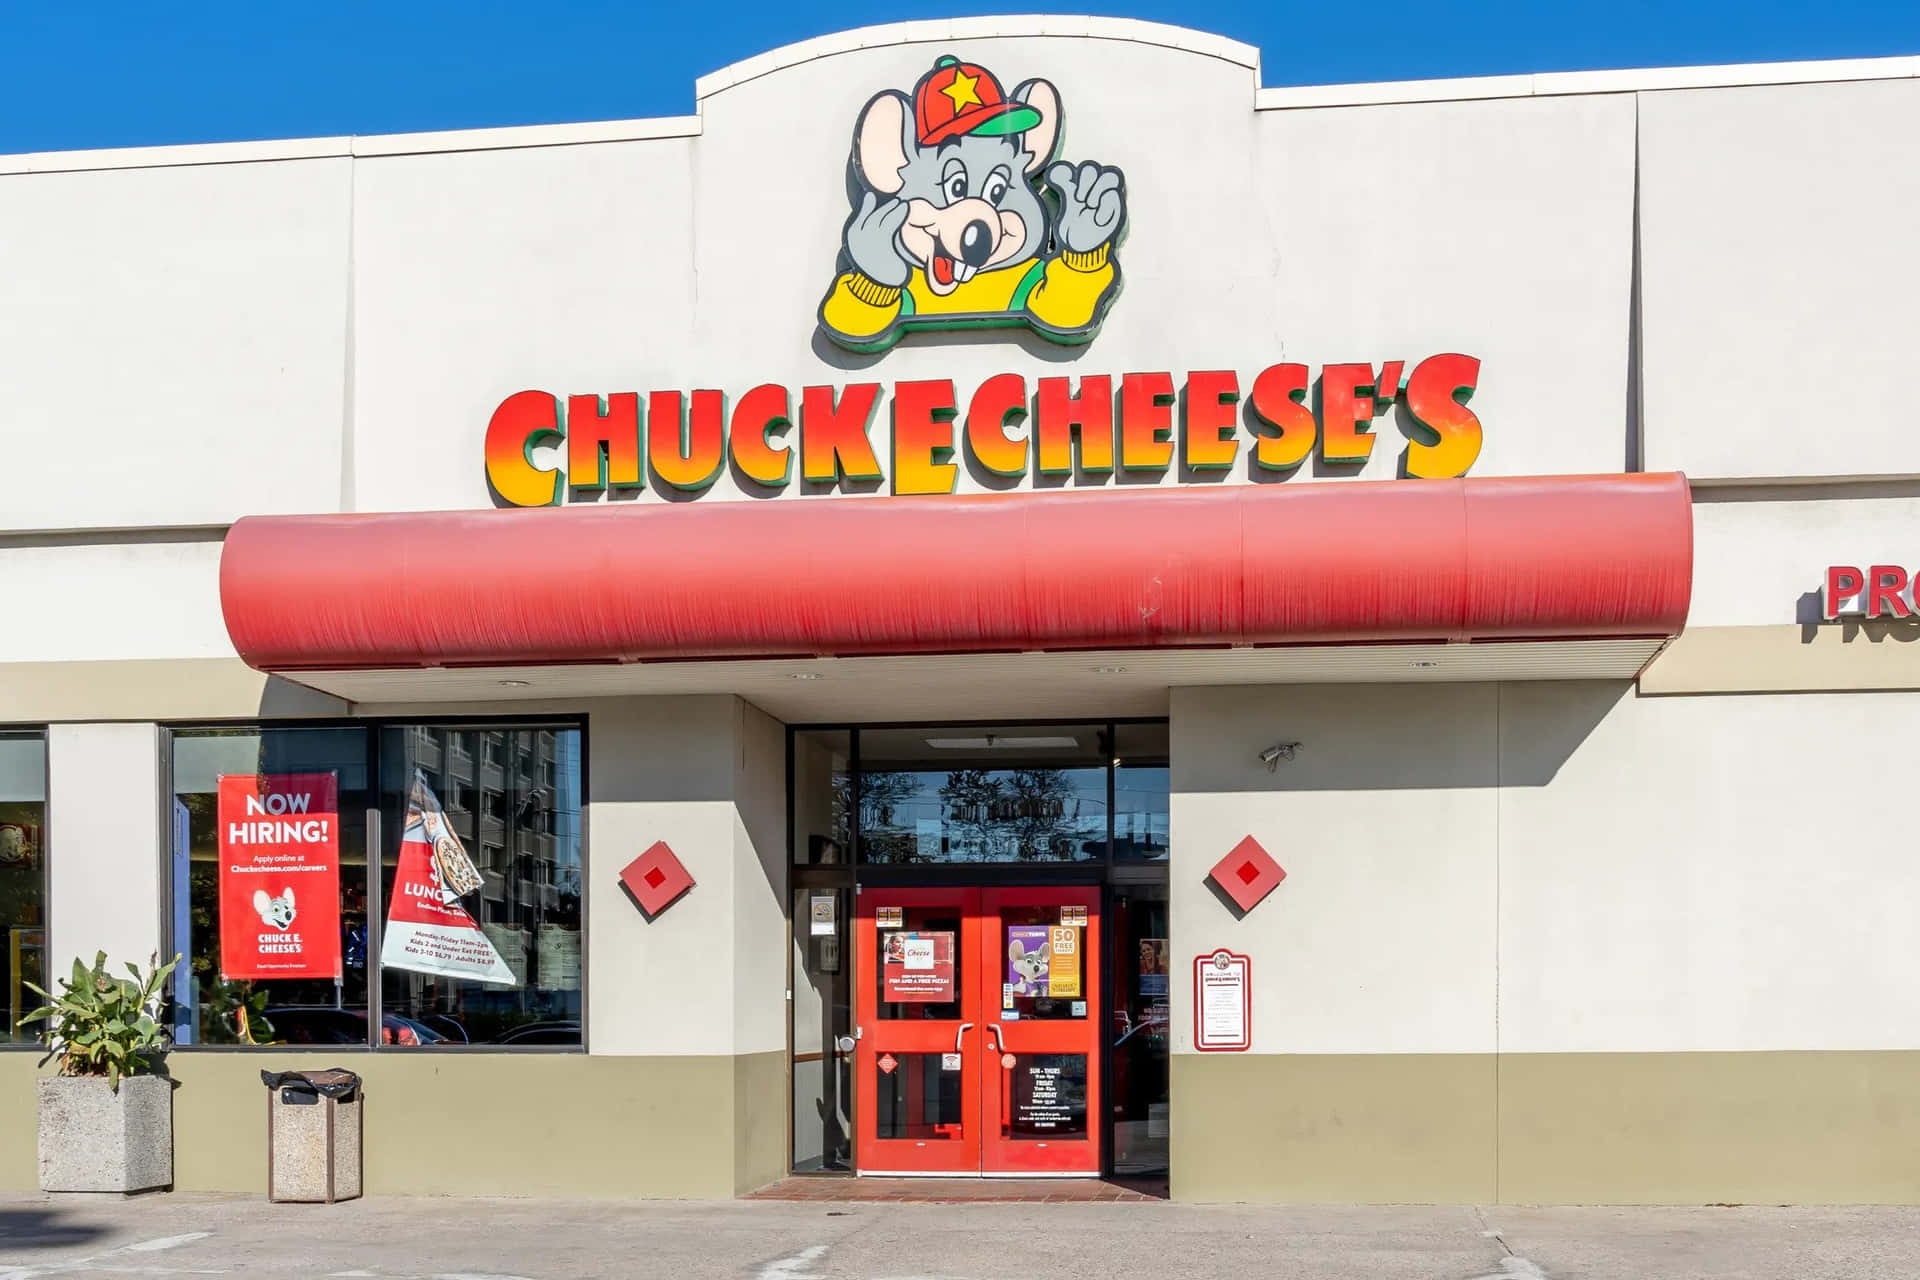 Have Fun at Chuck E Cheese - Where a Kid Can Be a Kid!